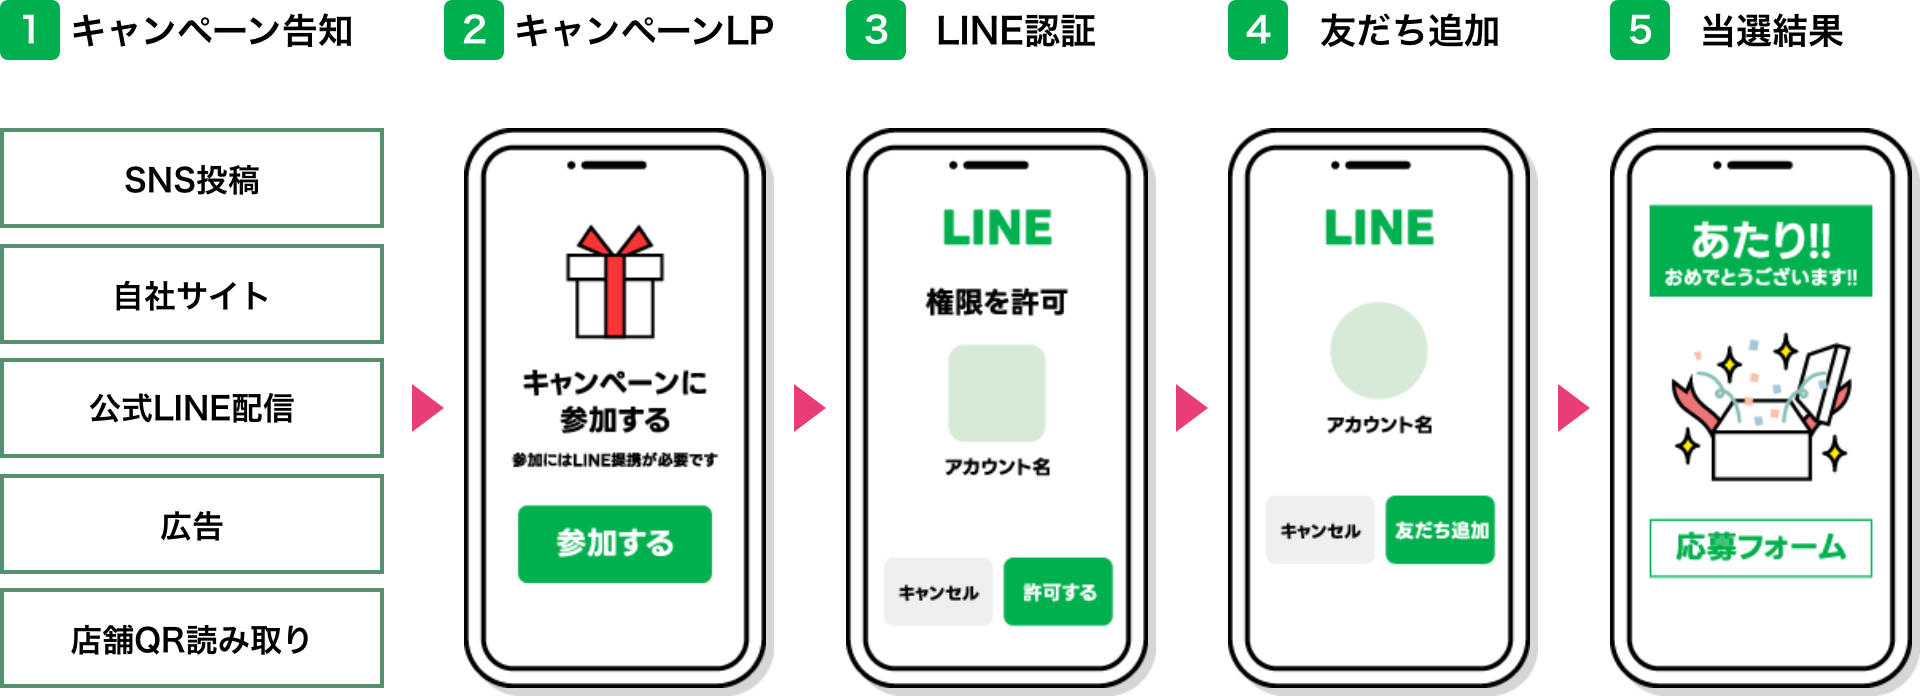 LINEのインスタントウィンキャンペーンの運用フロー図